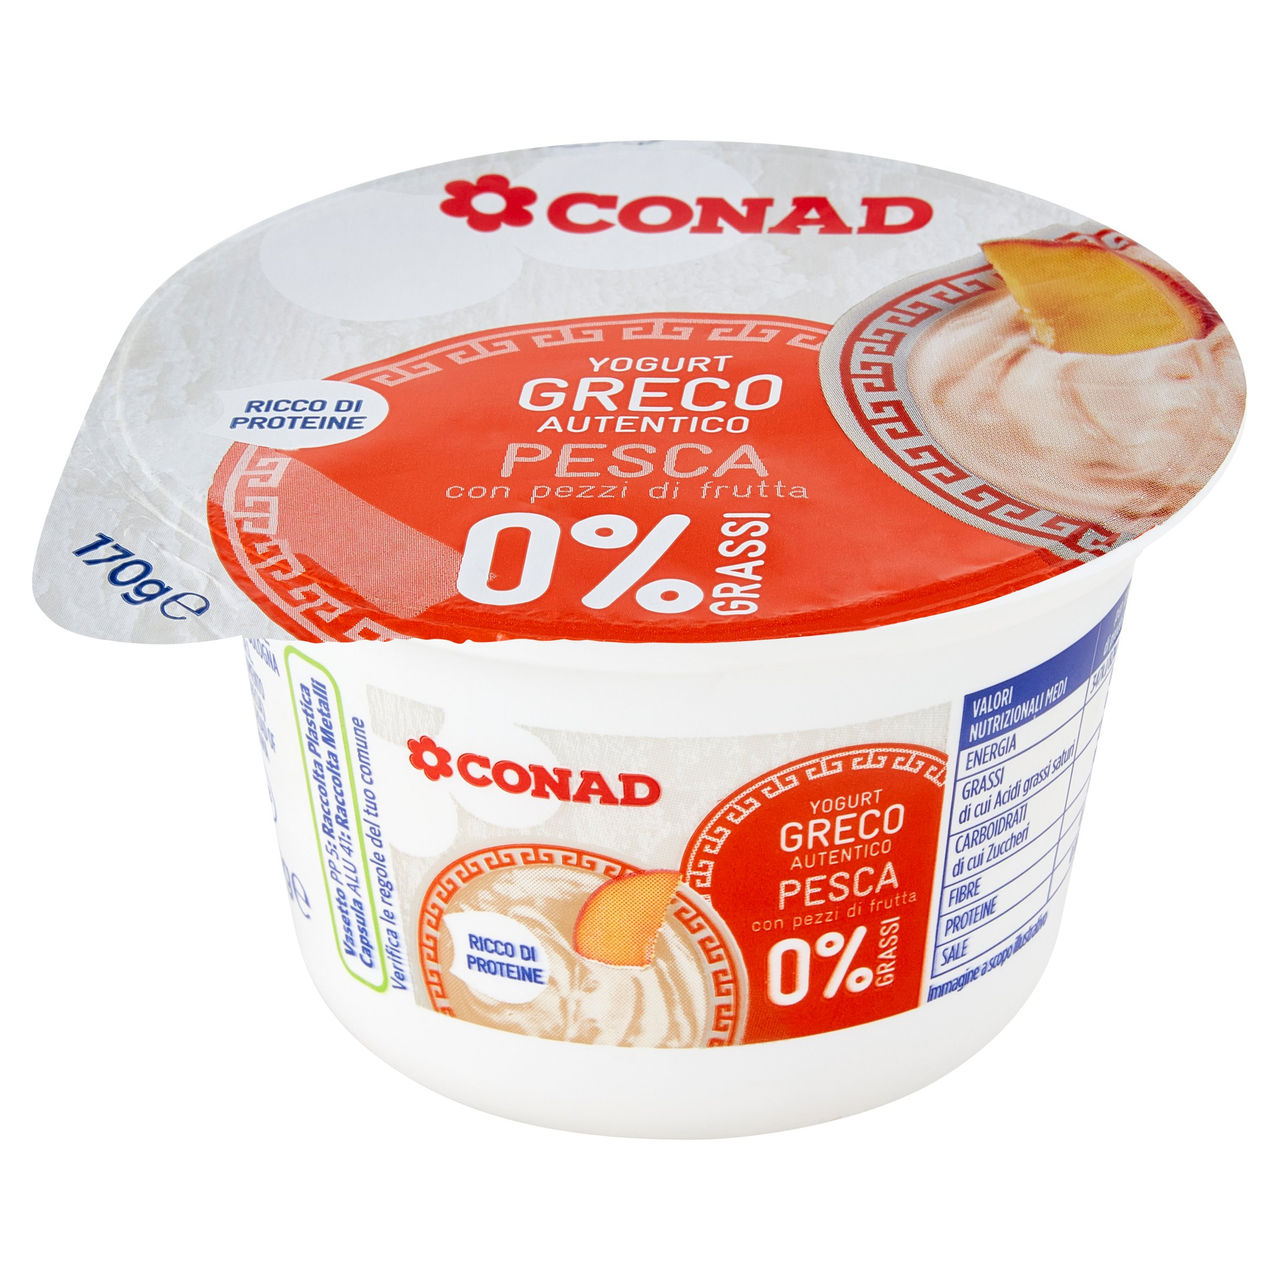 Yogurt Greco Pesca 0% Grassi 170 g Conad online